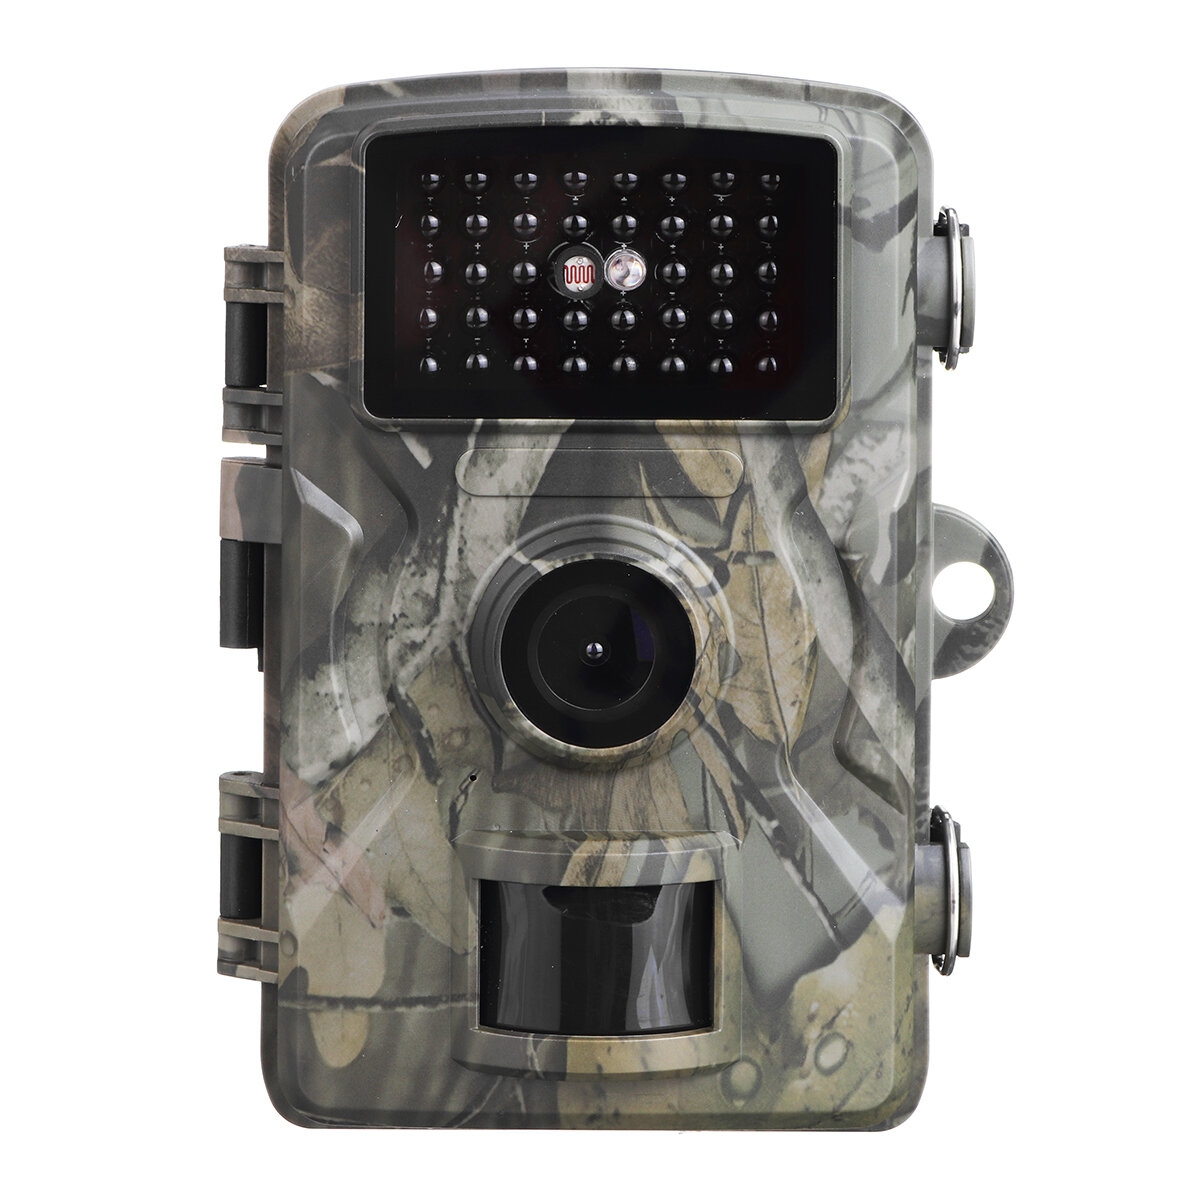 Στα €26.76 από αποθήκη Τσεχίας | DL001 16MP 1080P HD 2 inch Screen Hunting Camera IR Night Vision Waterproof Scouting Camera Monitoring Protecting Farms Safety